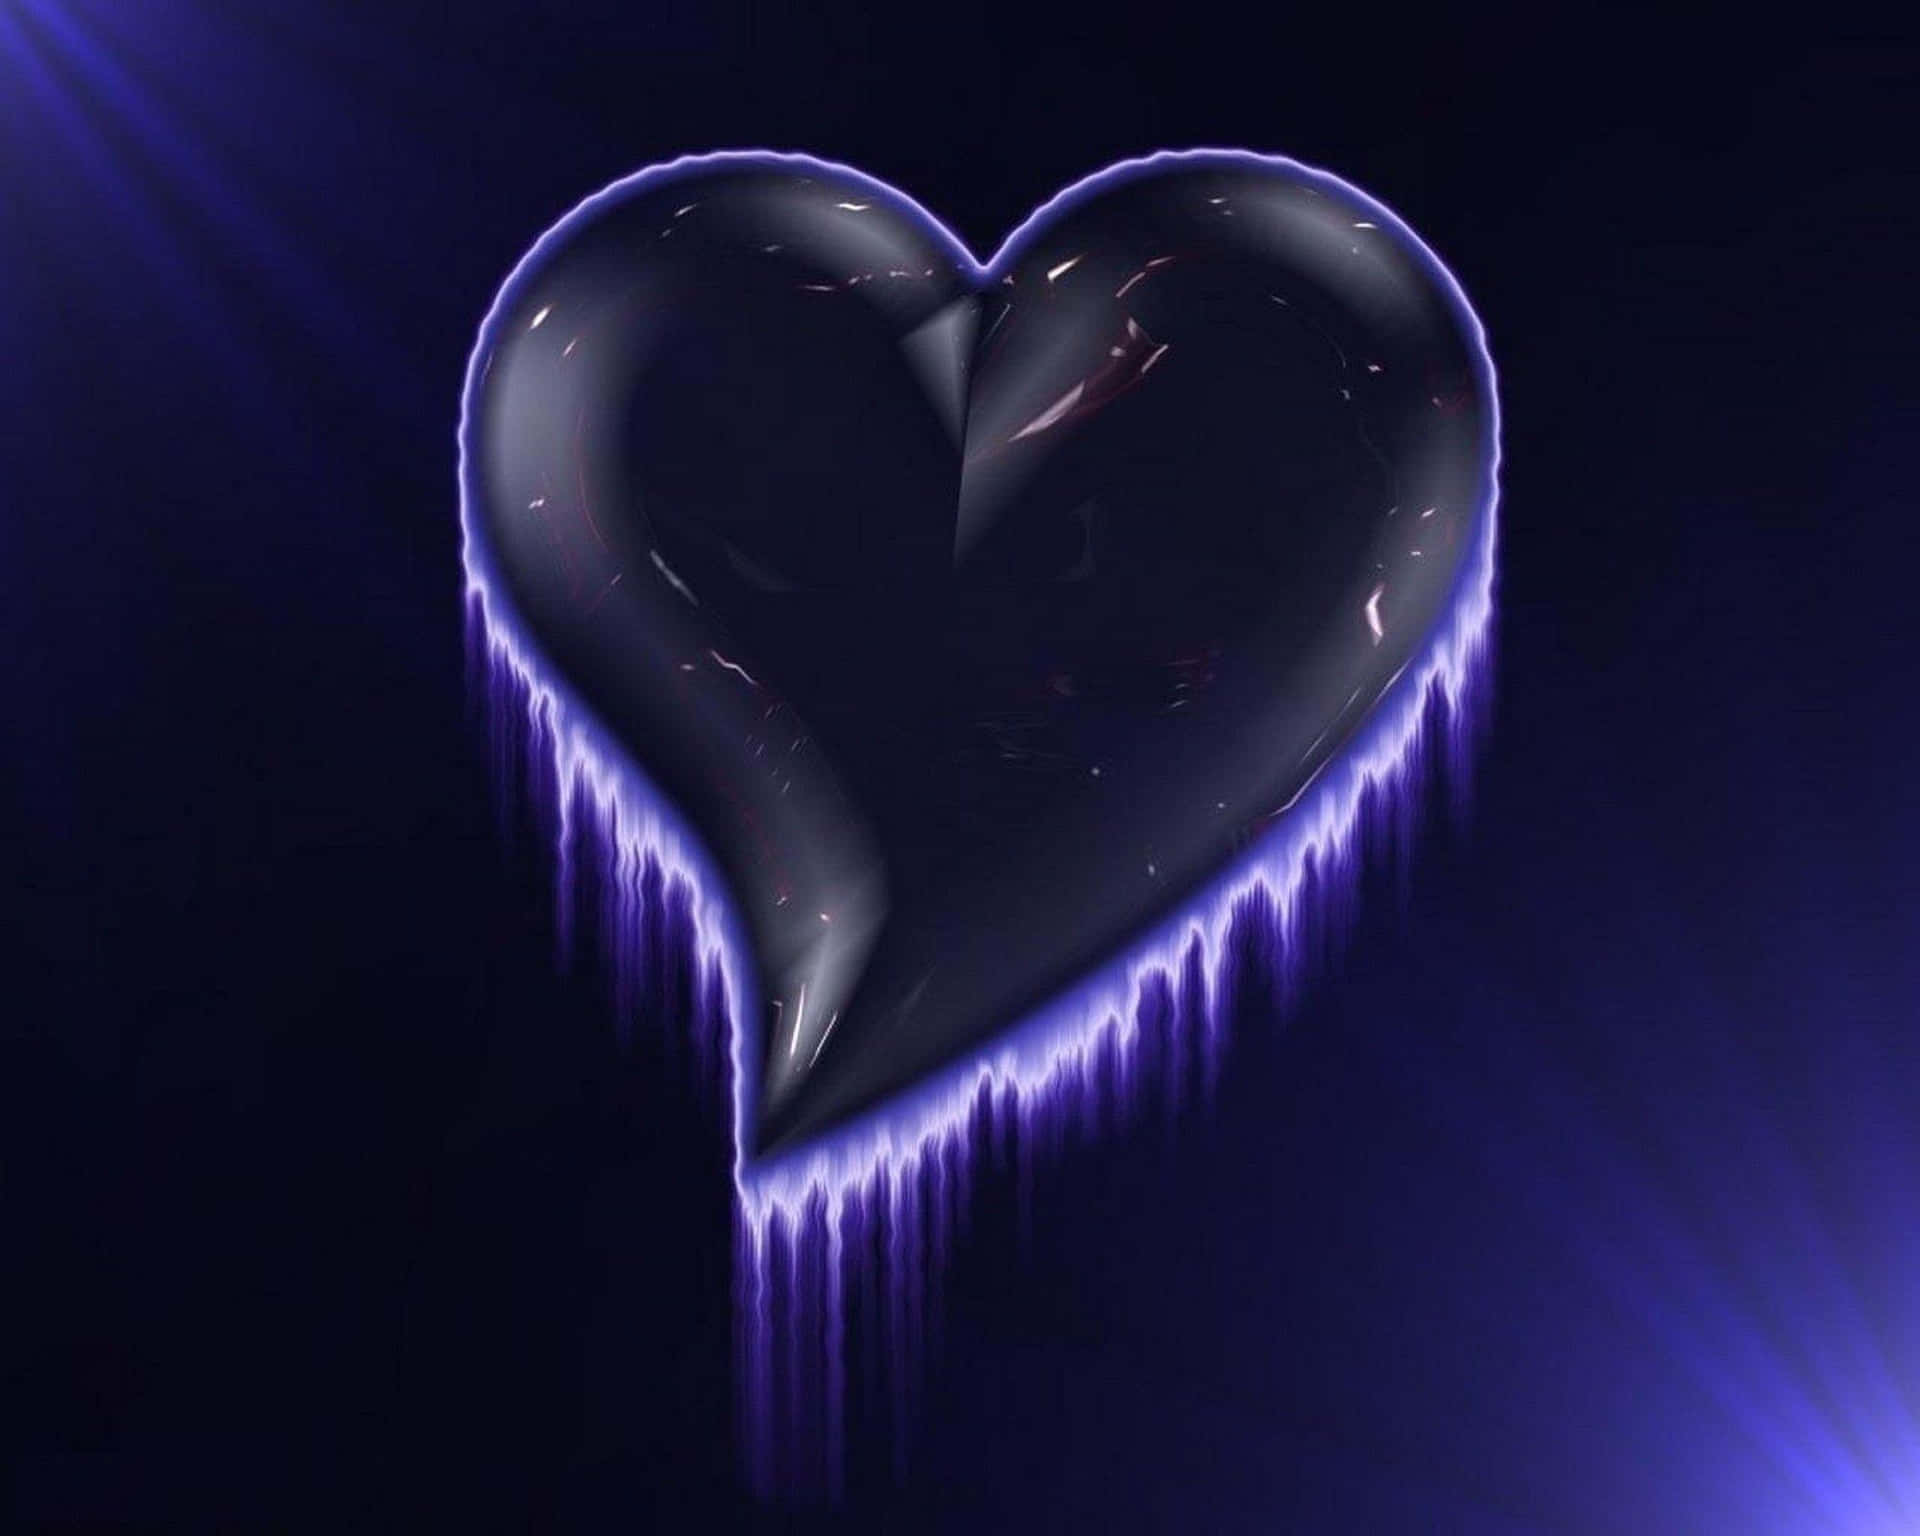 Ilustraciónen 3d De Un Corazón: Símbolo De Amor Y Vida Fondo de pantalla